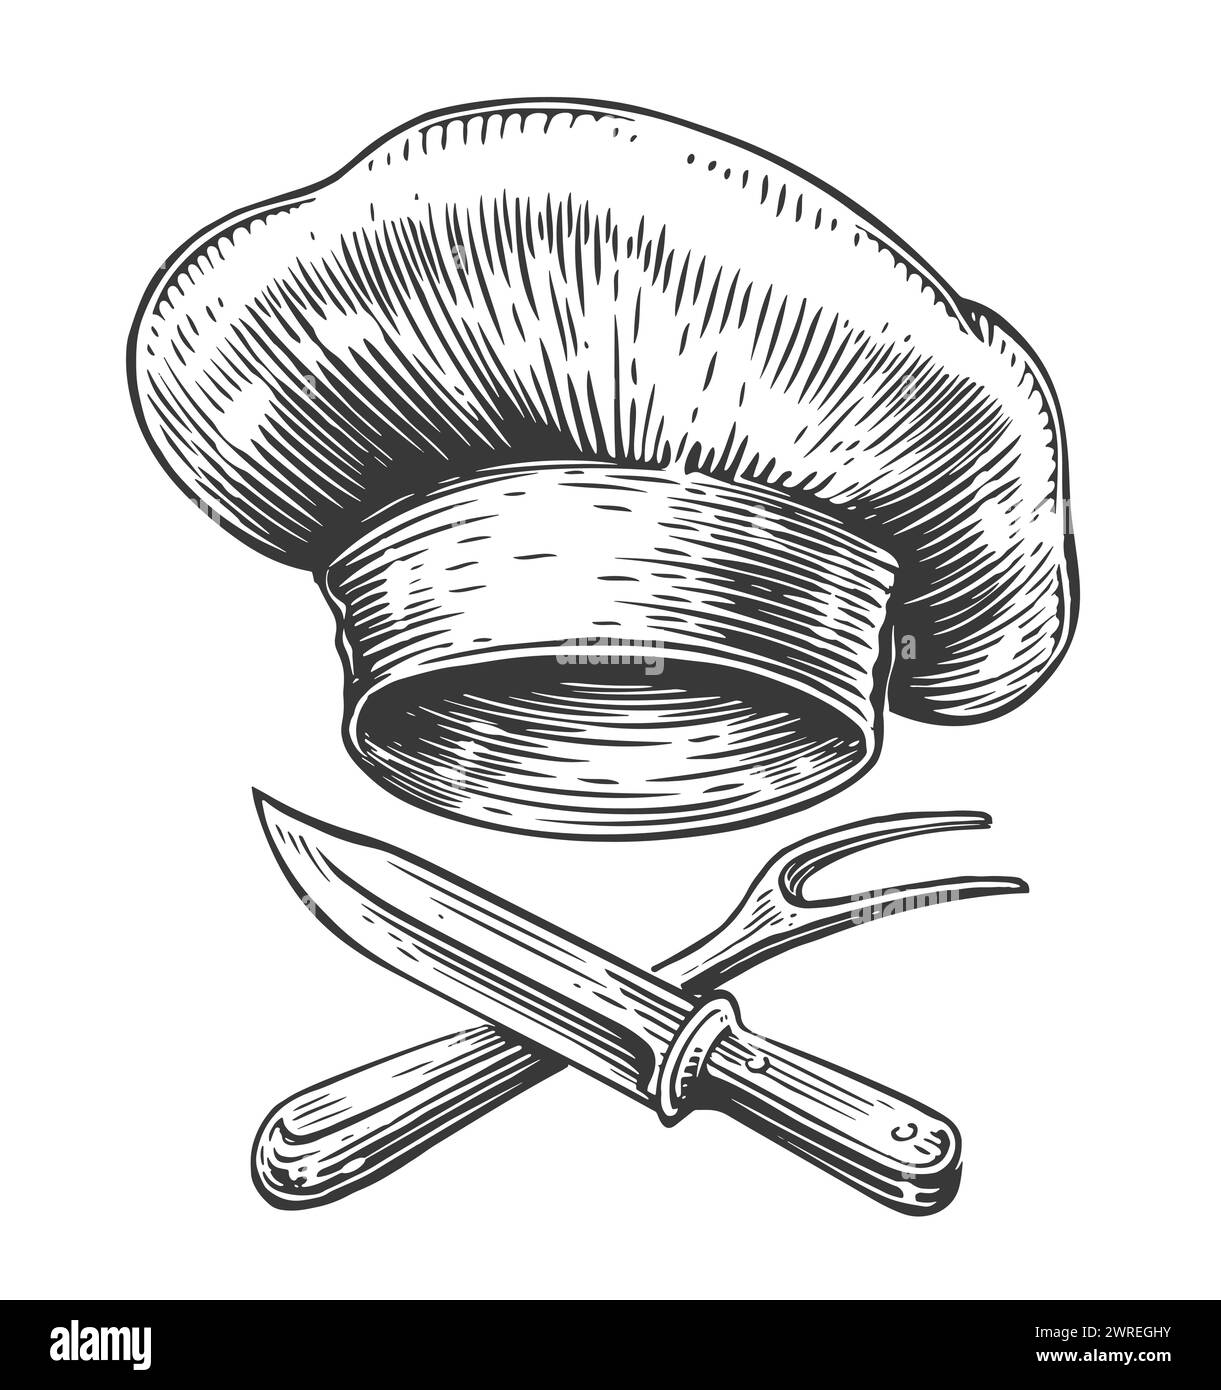 Chapeau de chef et couteau croisé, fourchette. Griller la nourriture, emblème barbecue. Illustration vectorielle vintage dessinée à la main Illustration de Vecteur